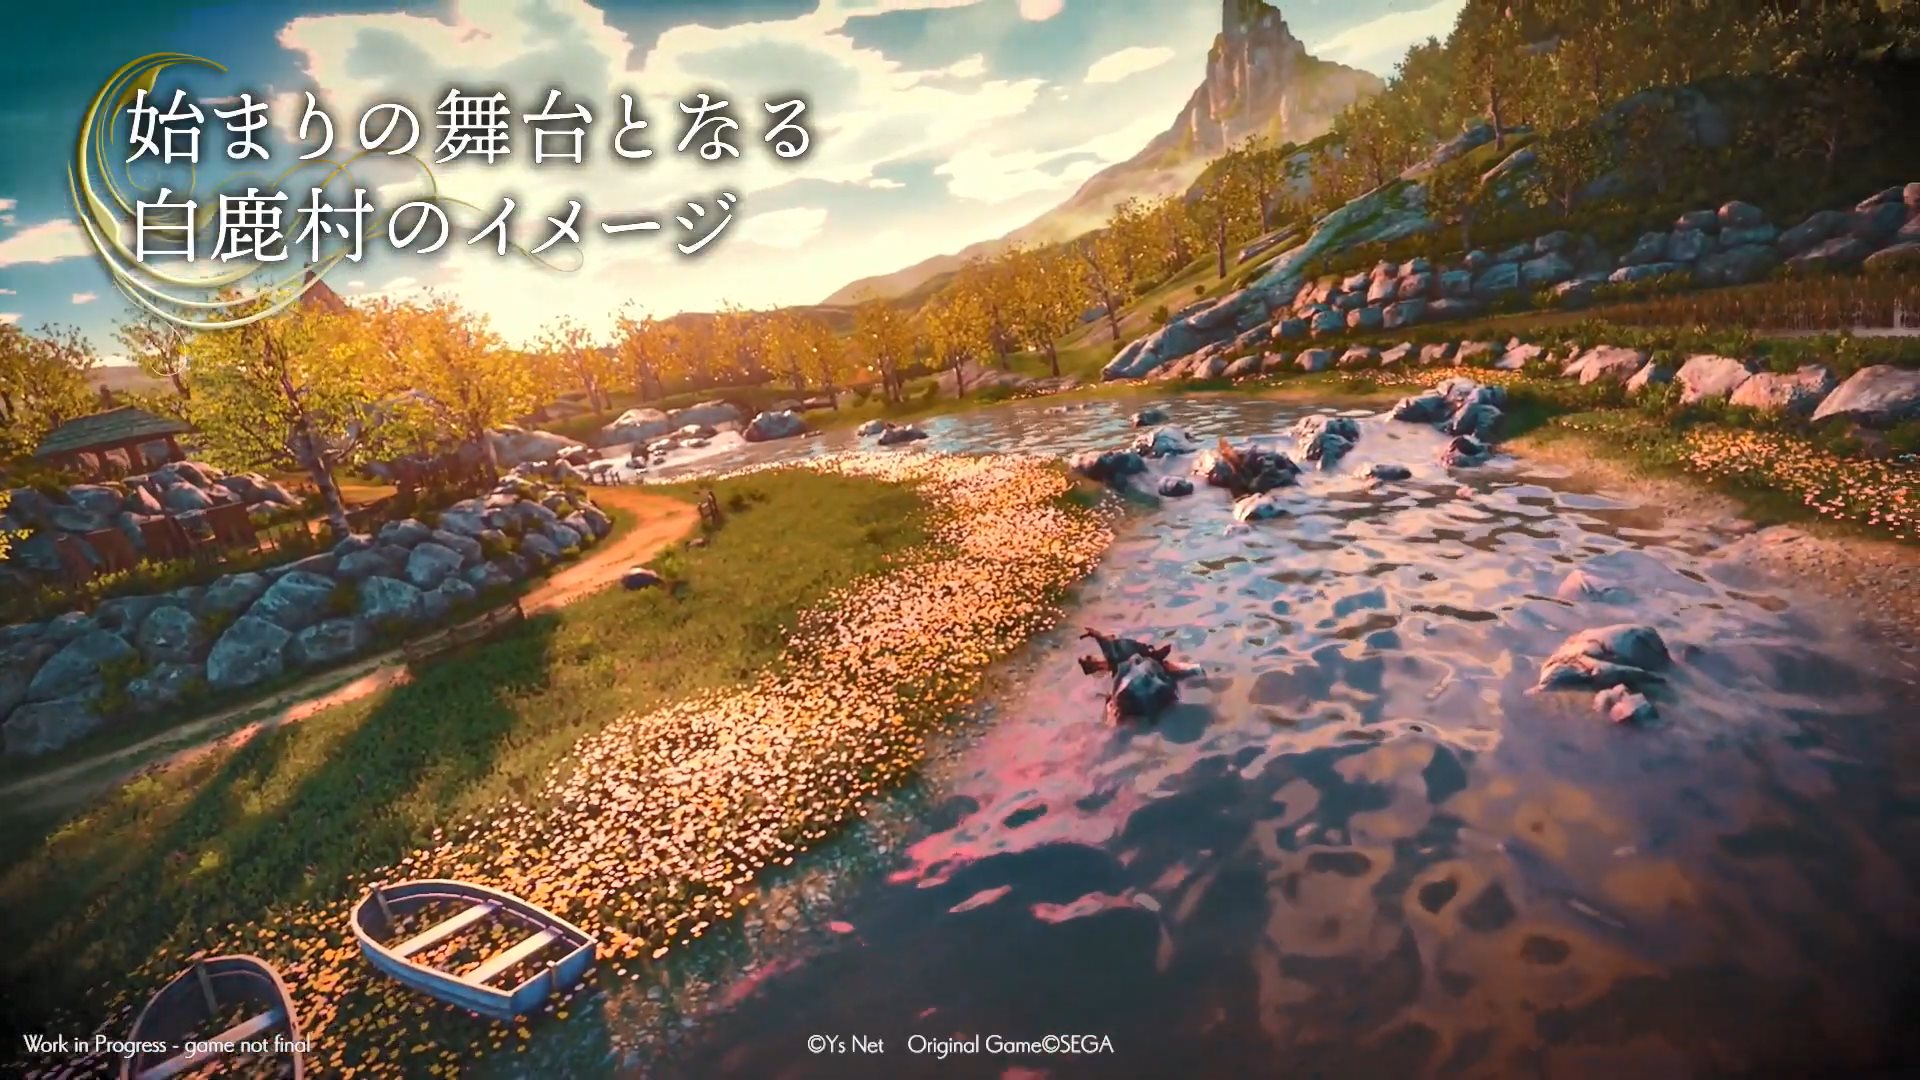 《莎木3》世界观介绍影像 鸟舞三大美人美绝人寰